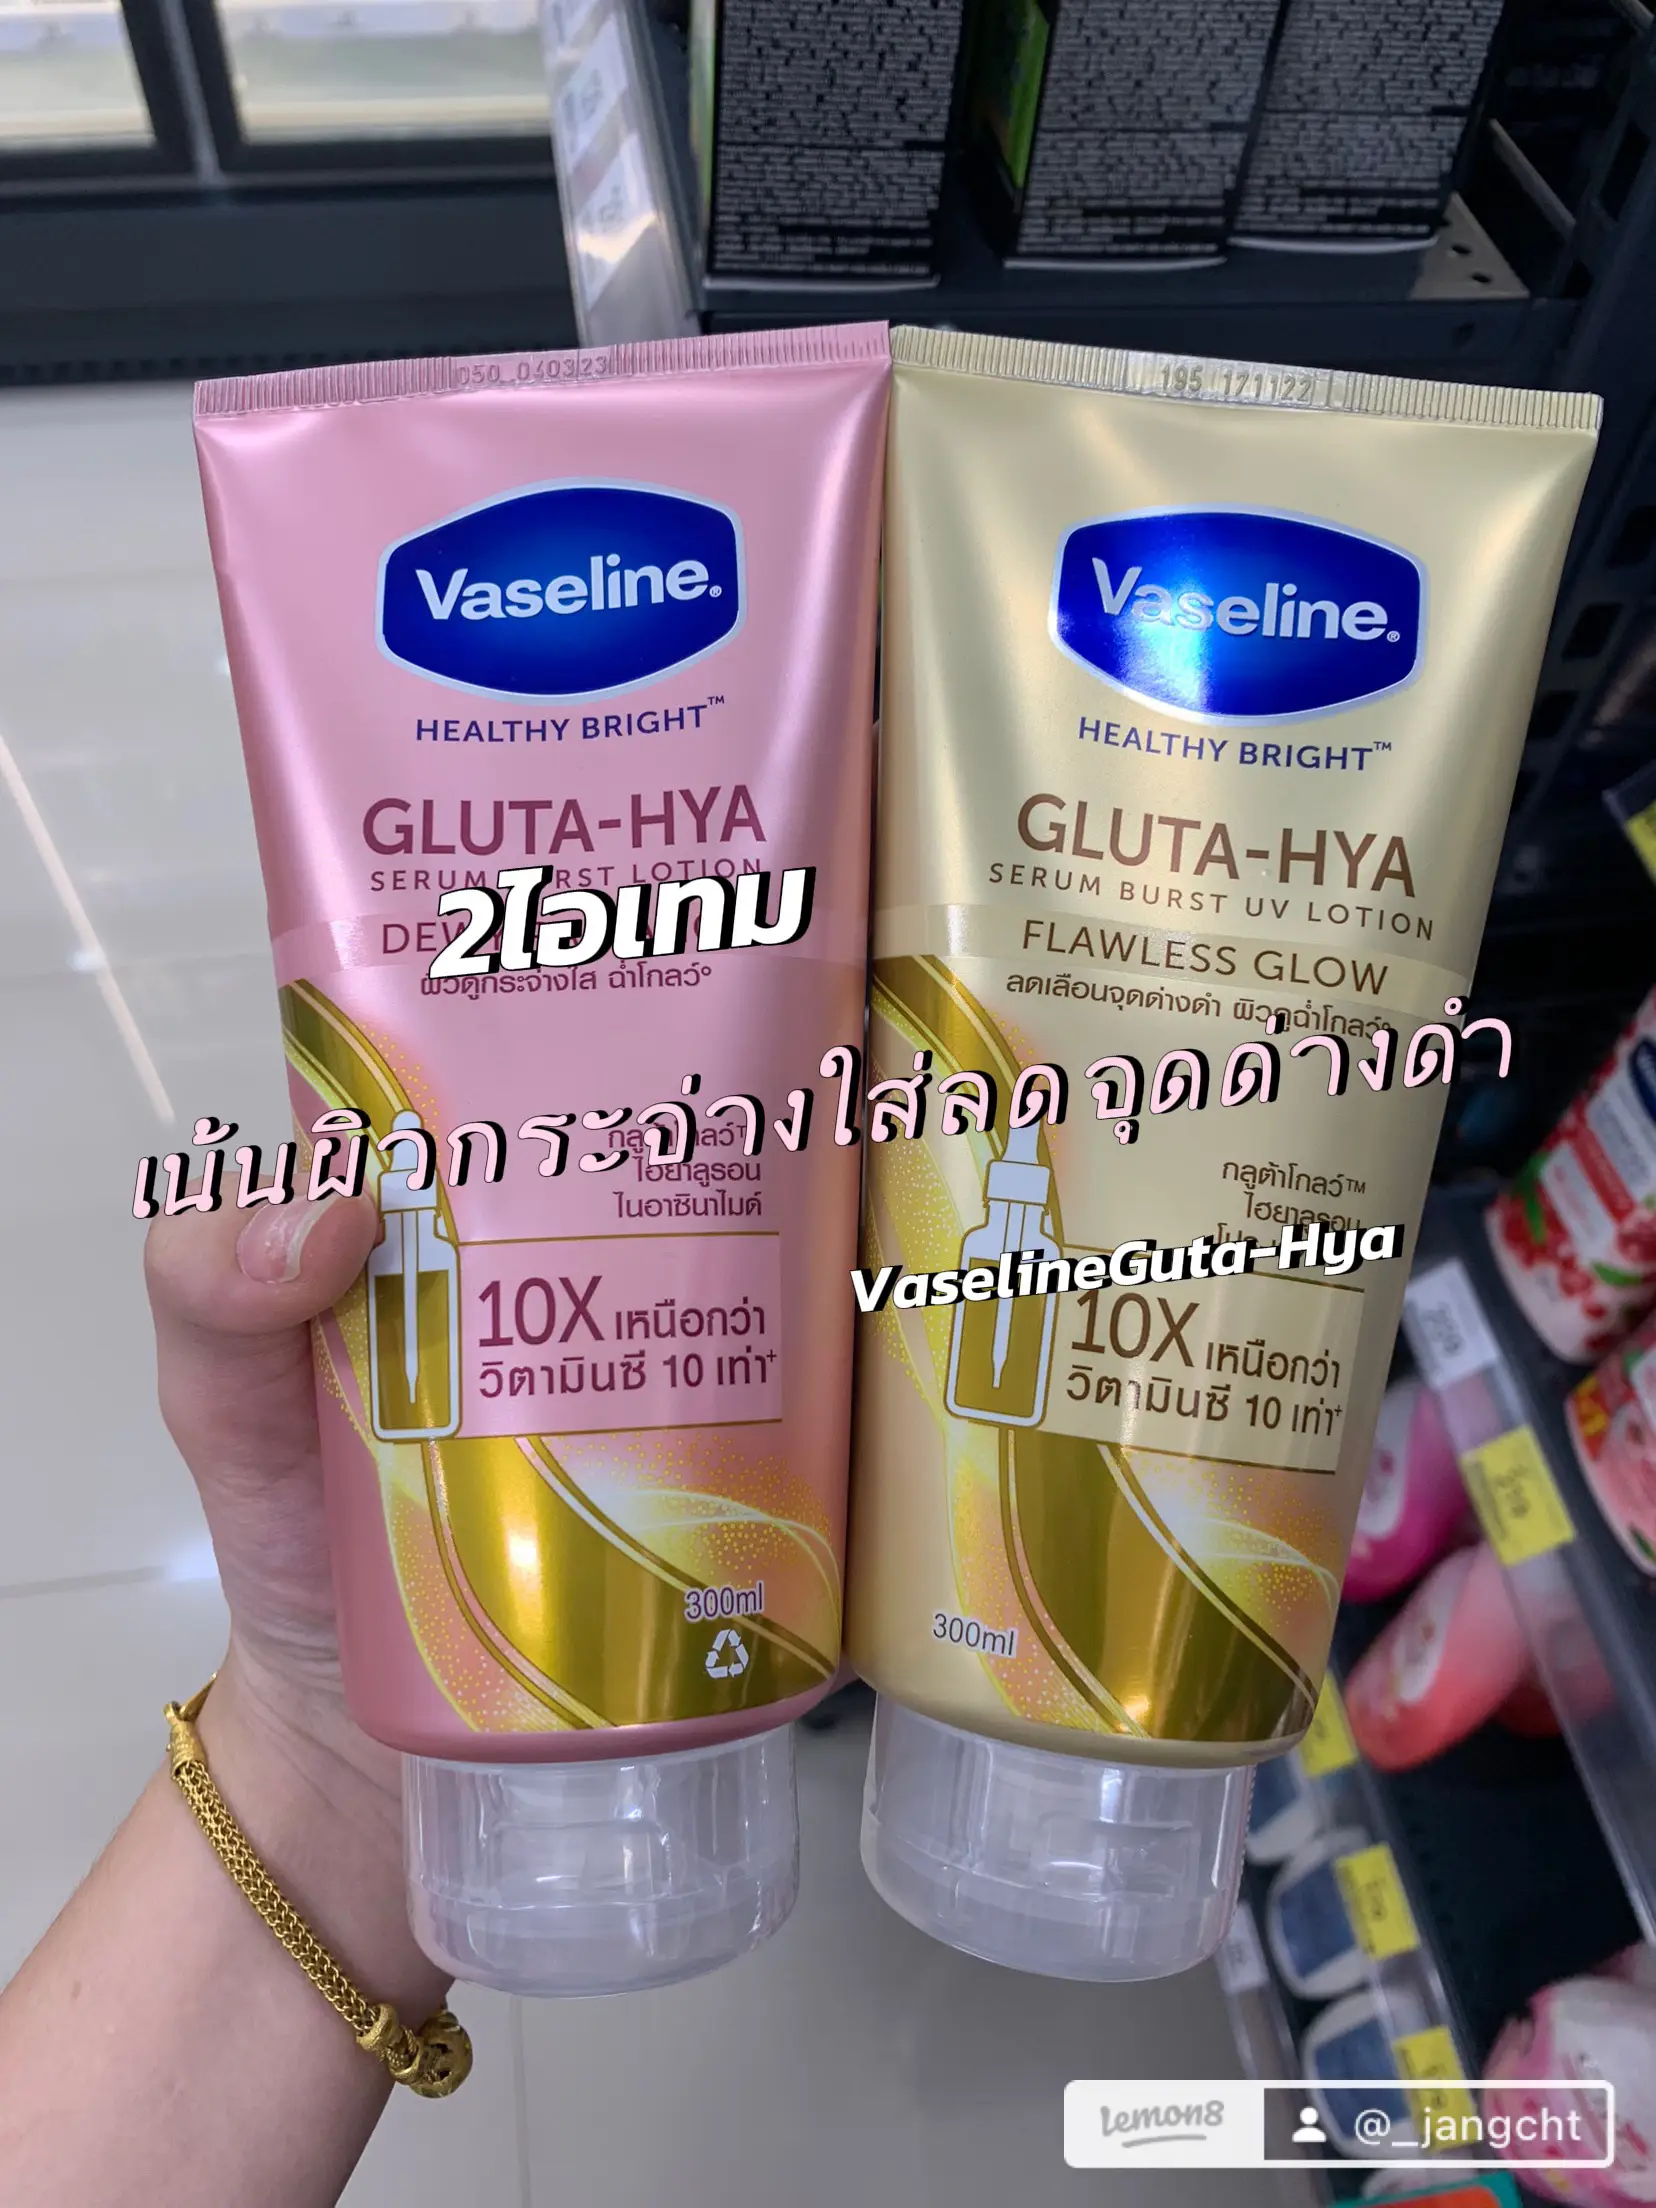 Vaseline Gluta - Hya Flawless Glow Serum Burst UV Body Lotion Size 300ml  (Pack Of 2)